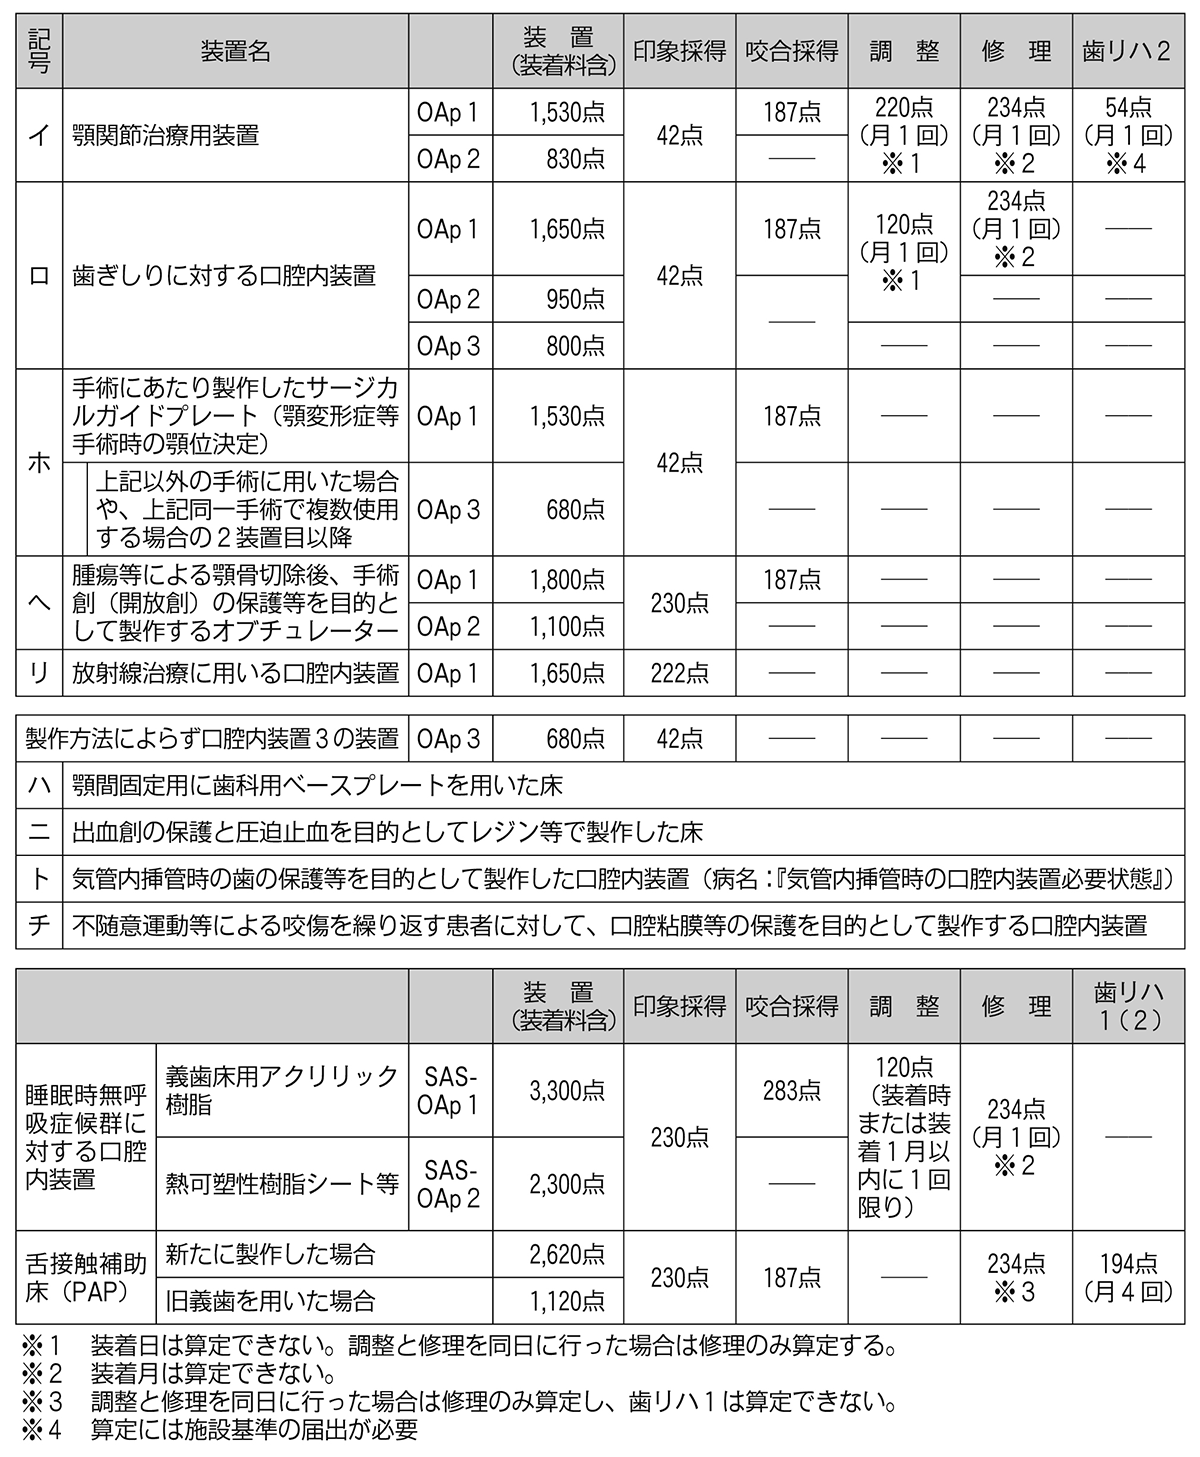 http://www.hhk.jp/member/hoken-seikyu-qa/2018/06/14/1880_01.gif